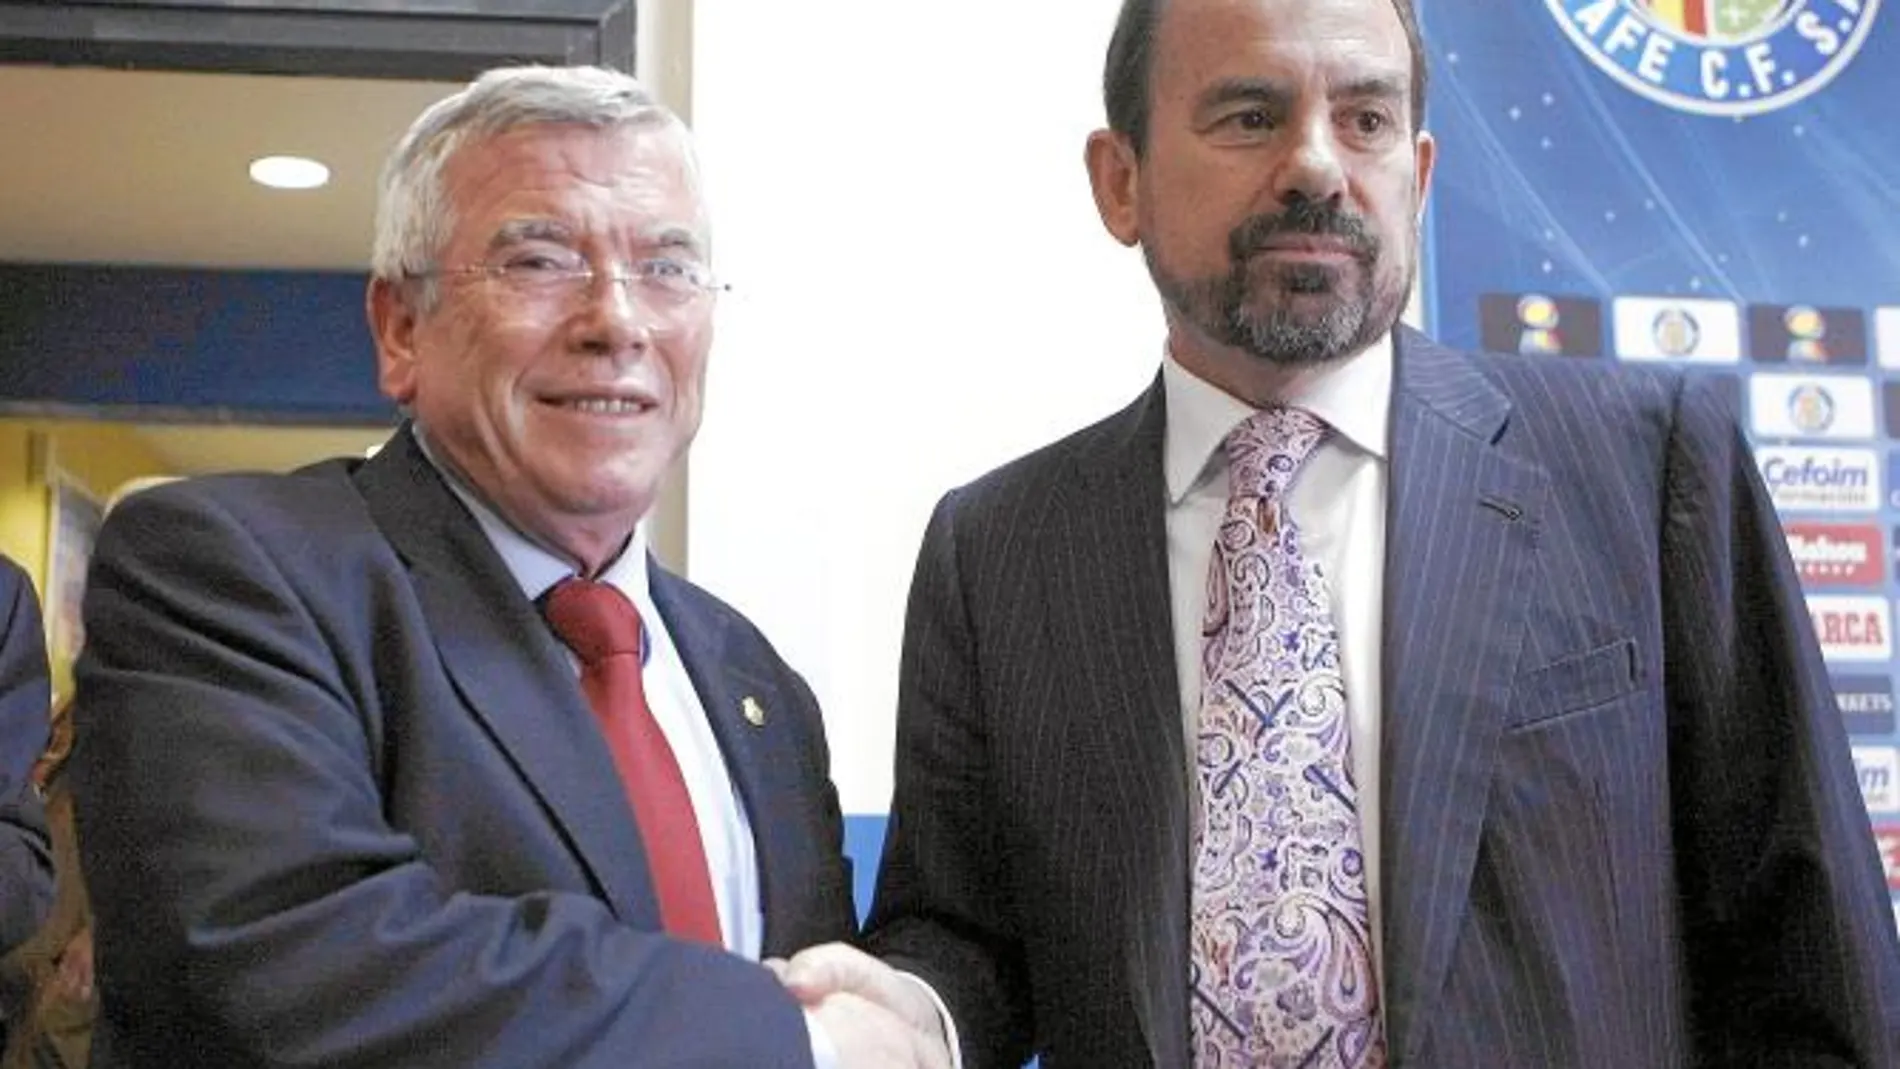 Castro y Torres firmaron en 2011 un acuerdo para la entrada de inversores en el Getafe C.F. desde Dubai